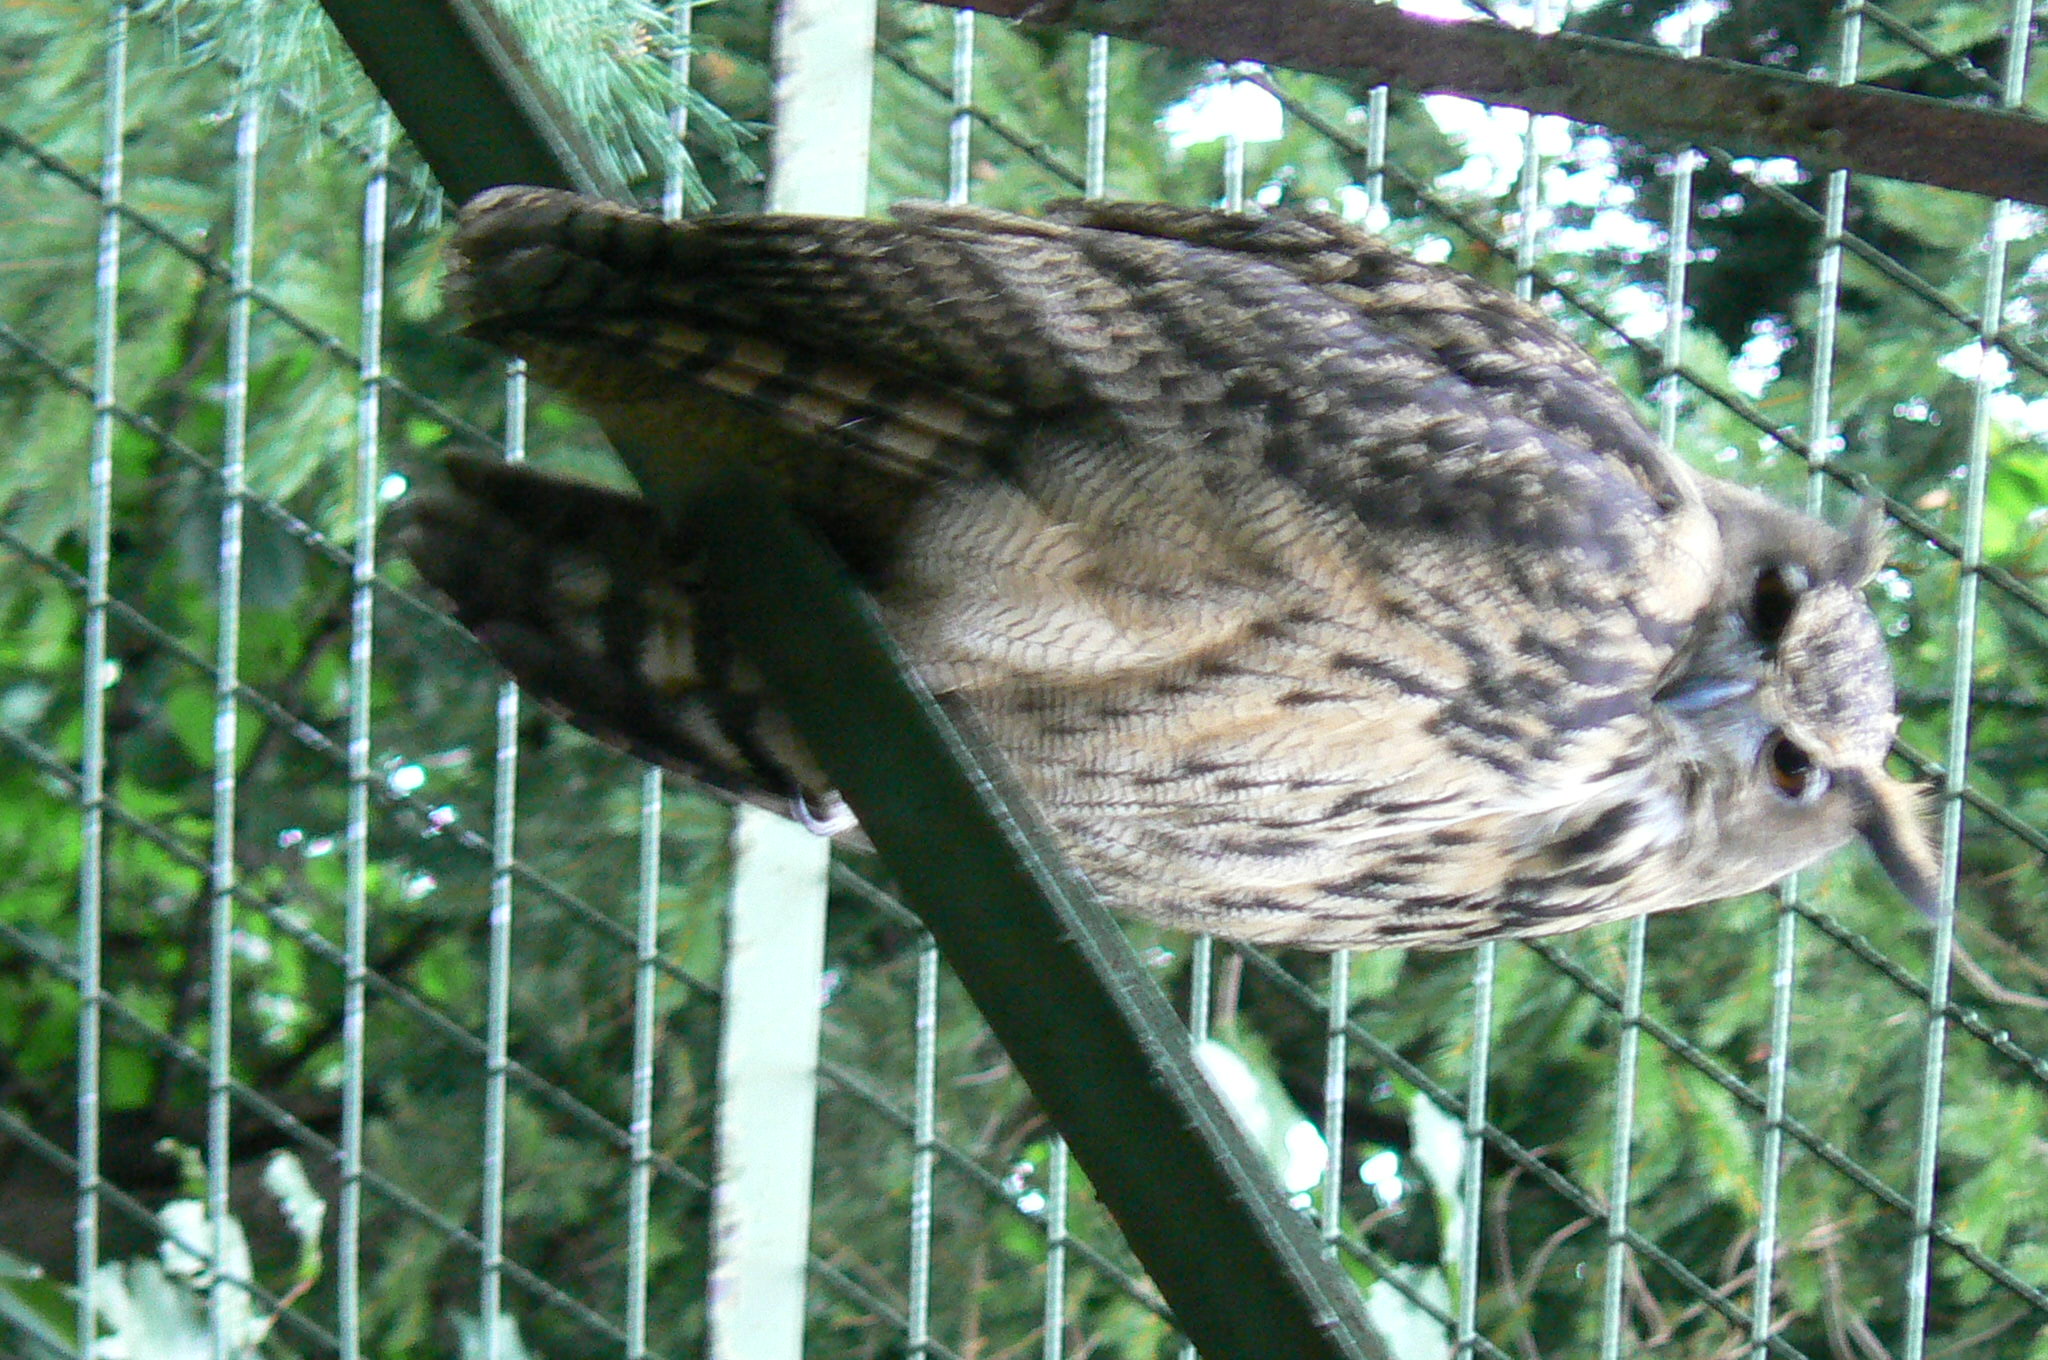 87.Výr ušatý-Eagle owl-to jen my jsme v té kleci hledali i o.jpg